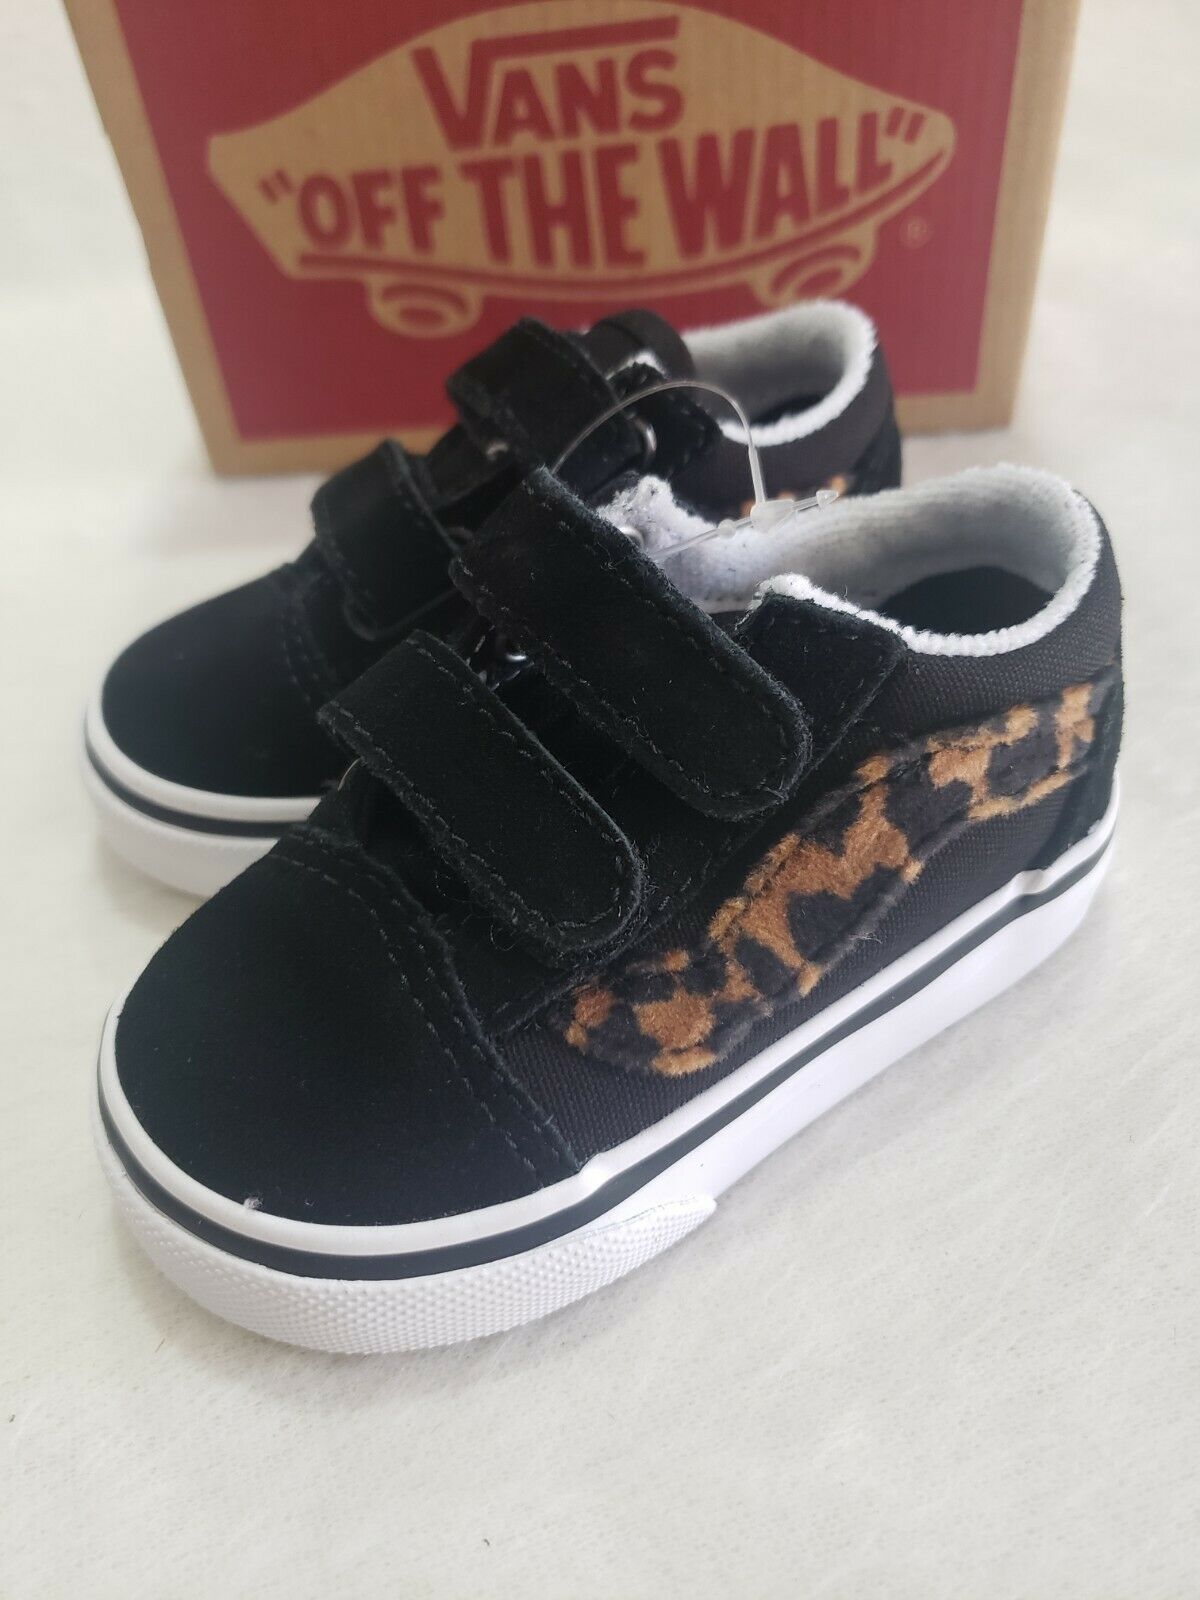 Vans Old Skool Leopard Fur Black Toddler Sneaker Shoes Size 4